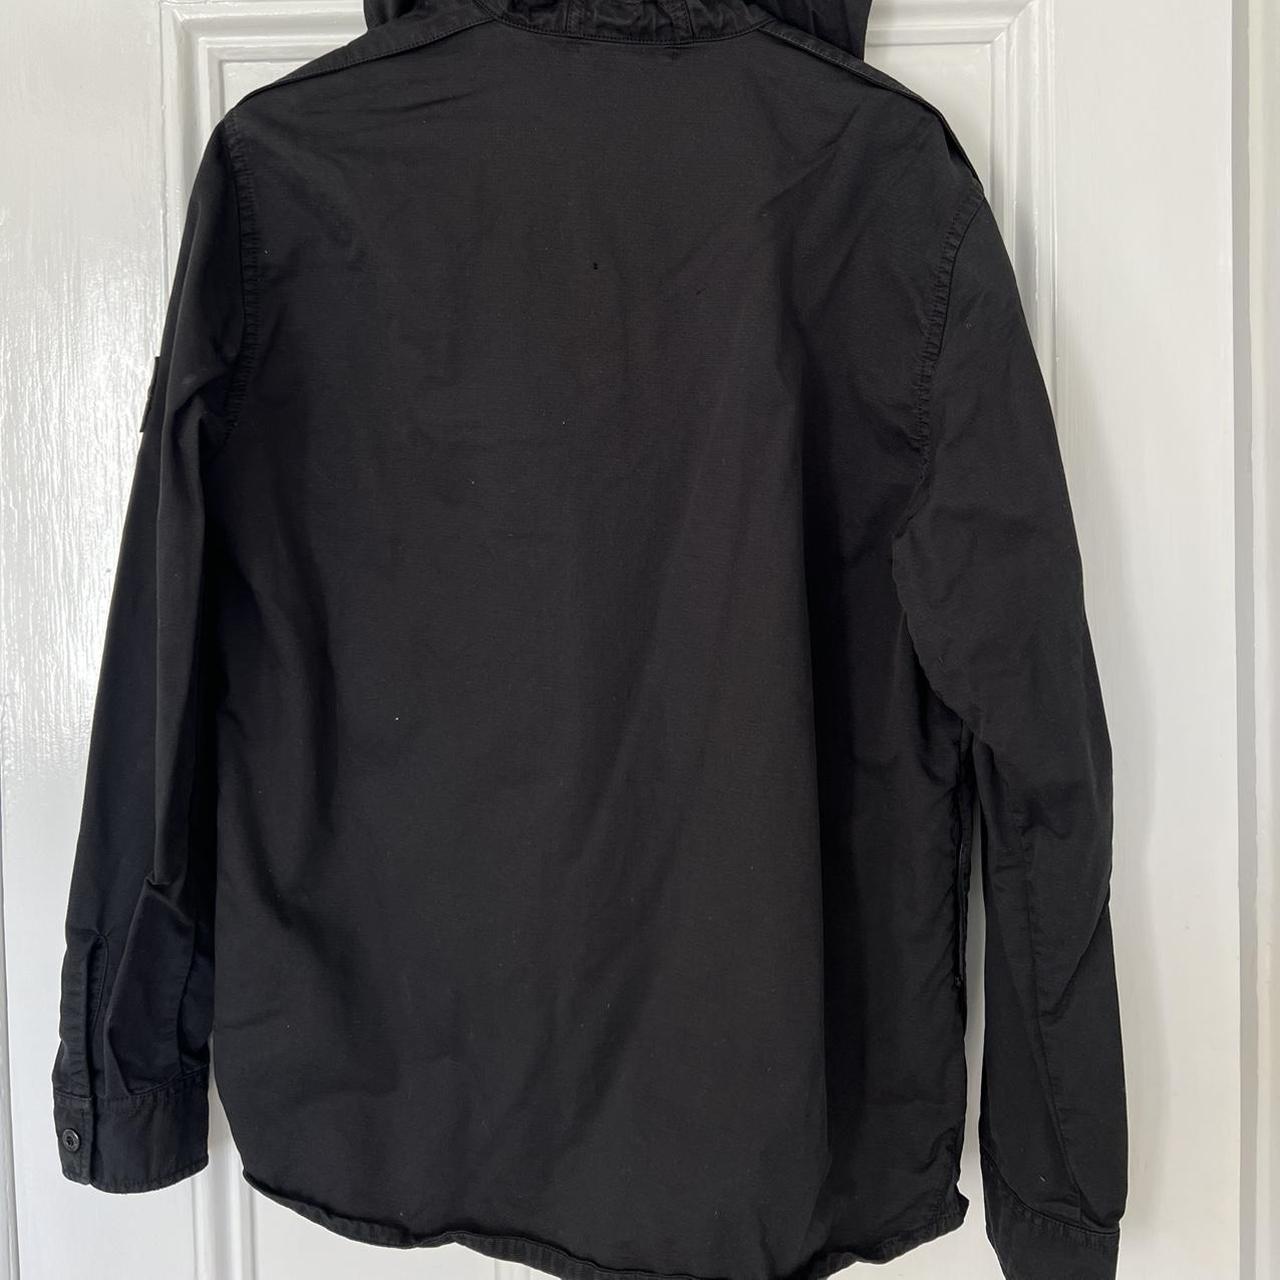 Stone Island hooded lightweight jacket in black.... - Depop